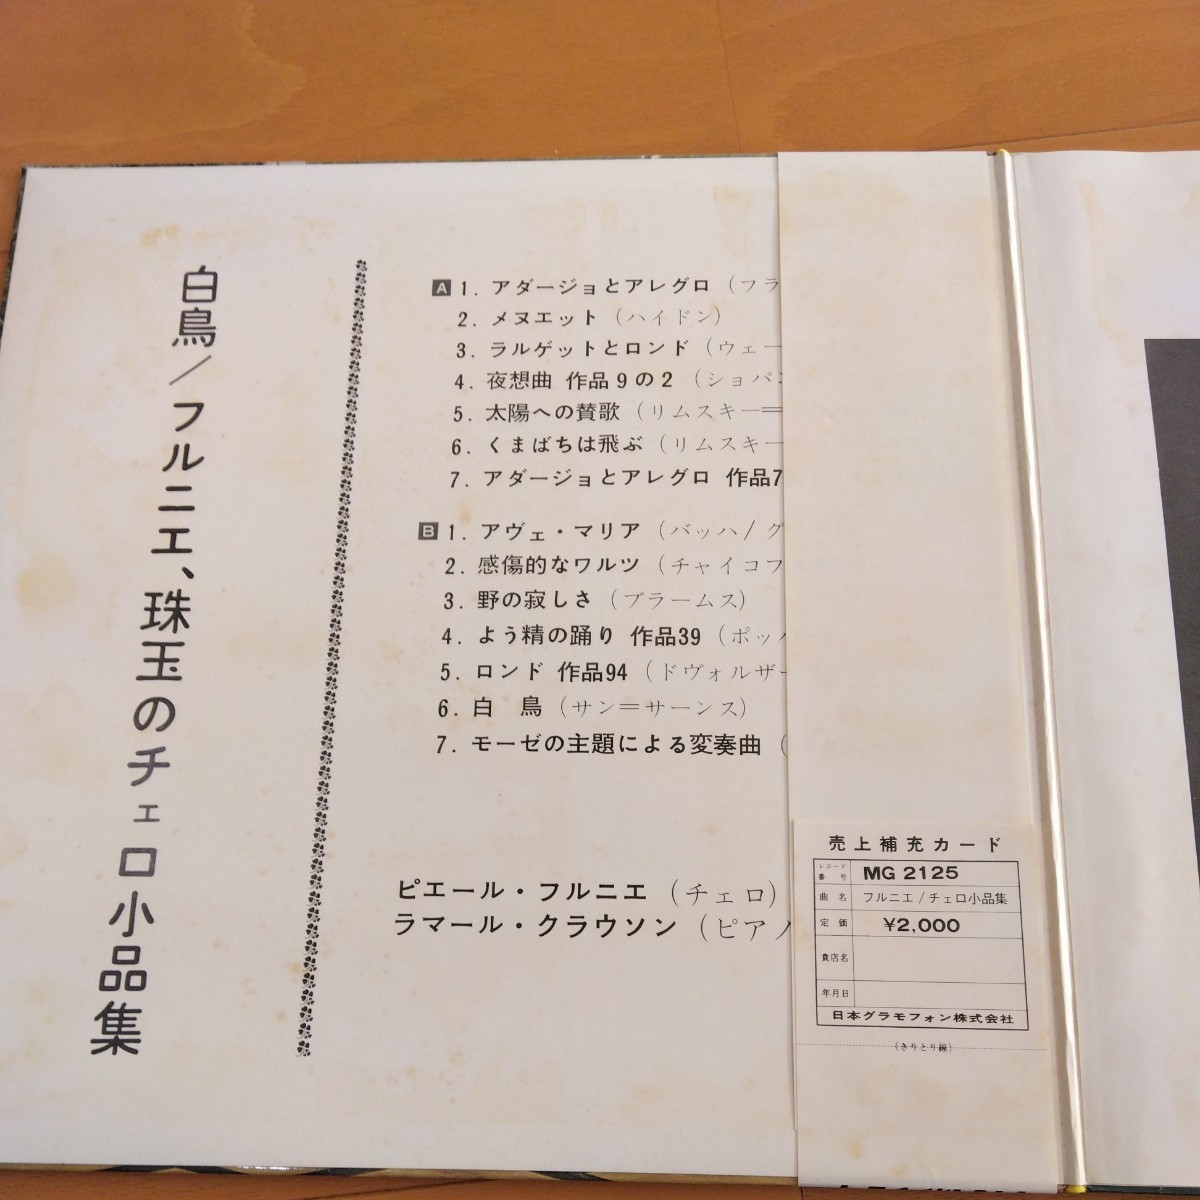 白鳥 フルニエ 珠玉のチェロ小品集 メヌエット アヴェ マリア LPレコードの画像2